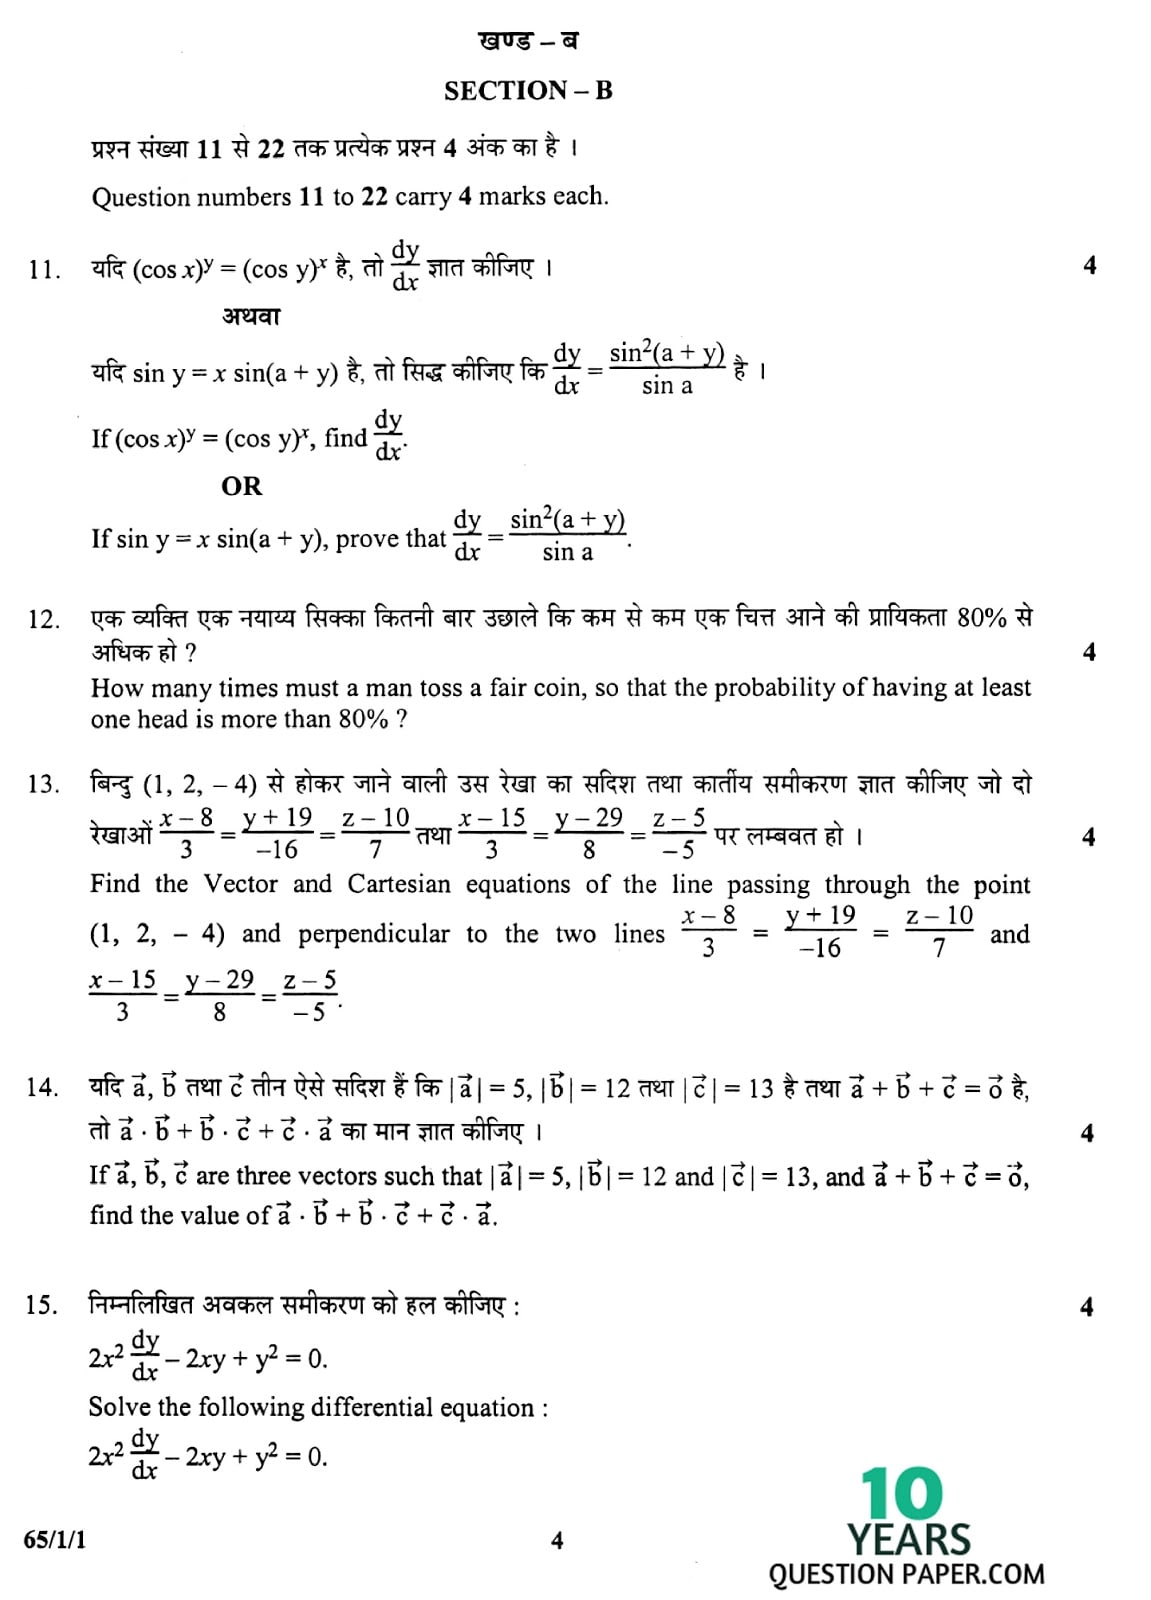 CBSE Class 12 Mathematics 2010 Question Paper